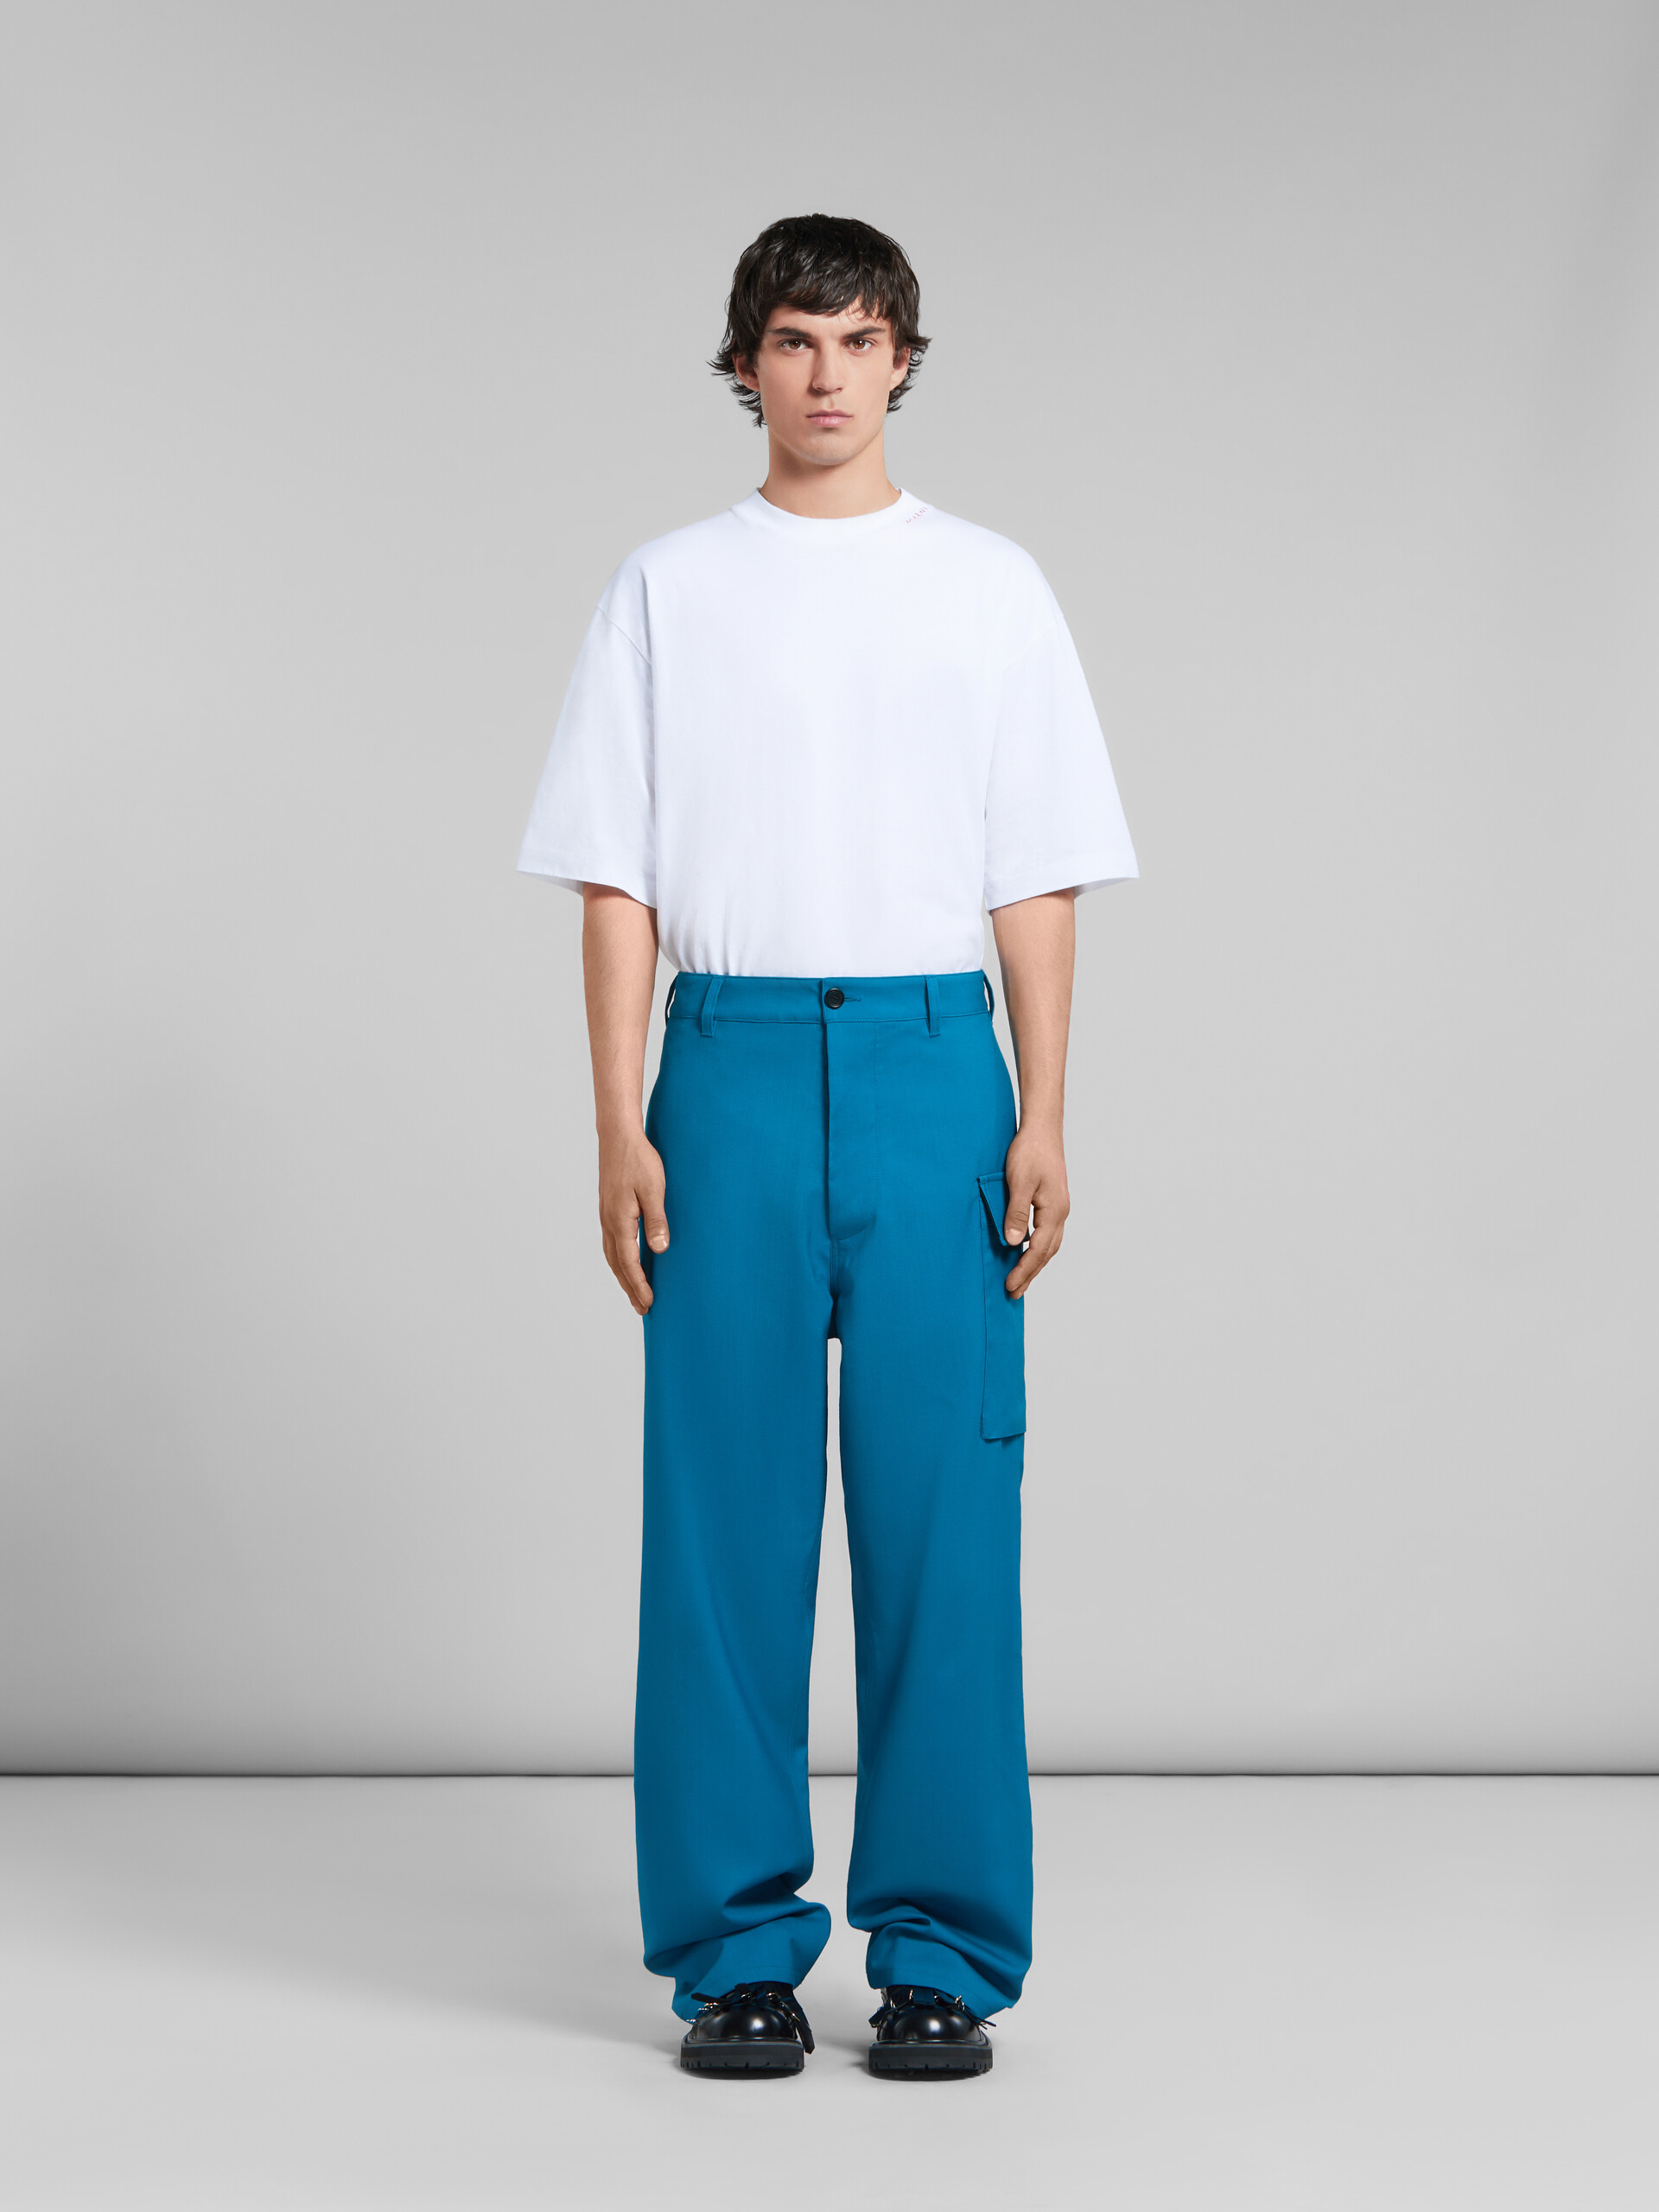 Blaugrüne Hose aus Tropenwolle mit Utility-Tasche - Hosen - Image 2